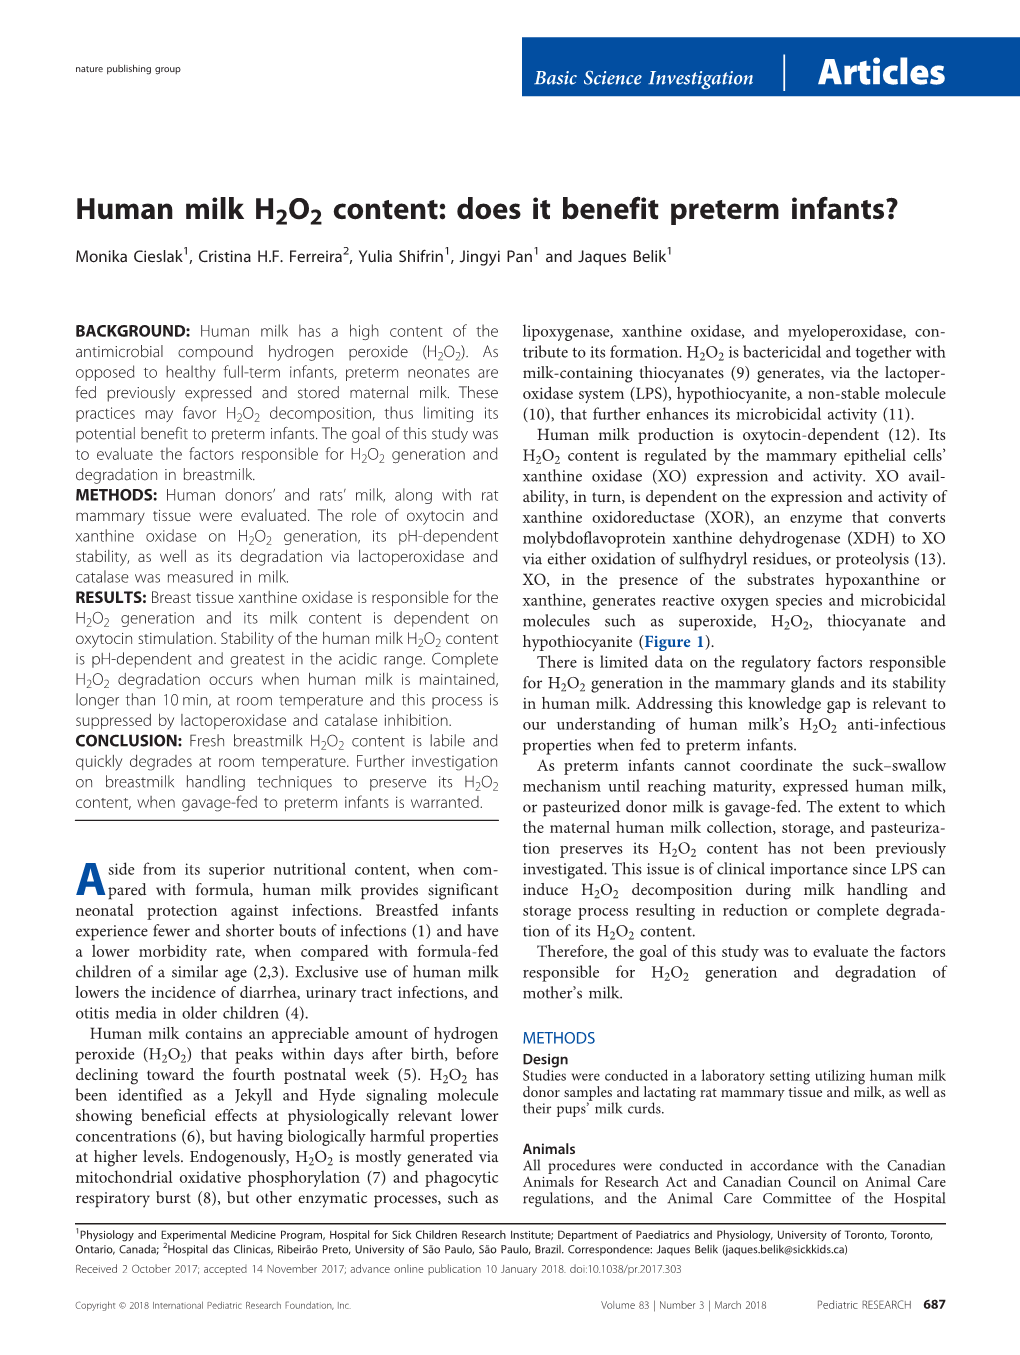 Human Milk H2O2 Content: Does It Benefit Preterm Infants?